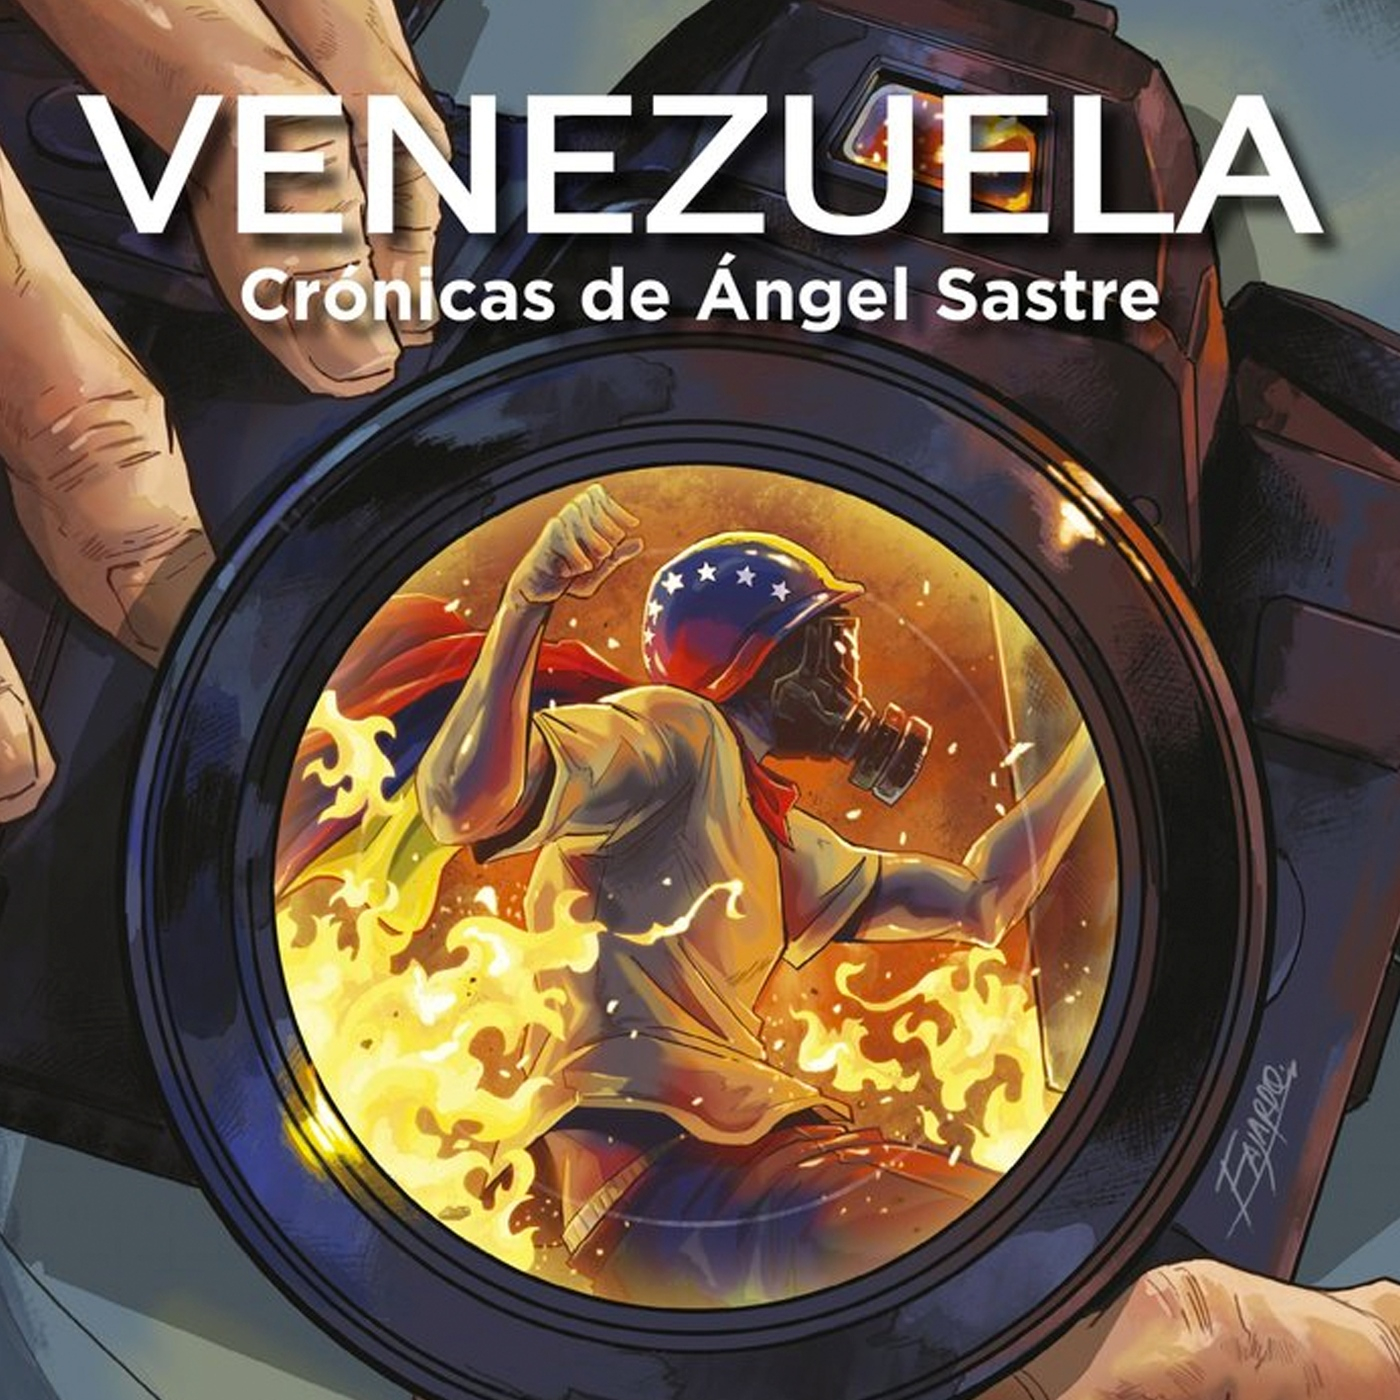 PLANETA LABERINTO. Venezuela: Una crónica en llamas. Entrevista Ángel Sastre y Jon Sedano